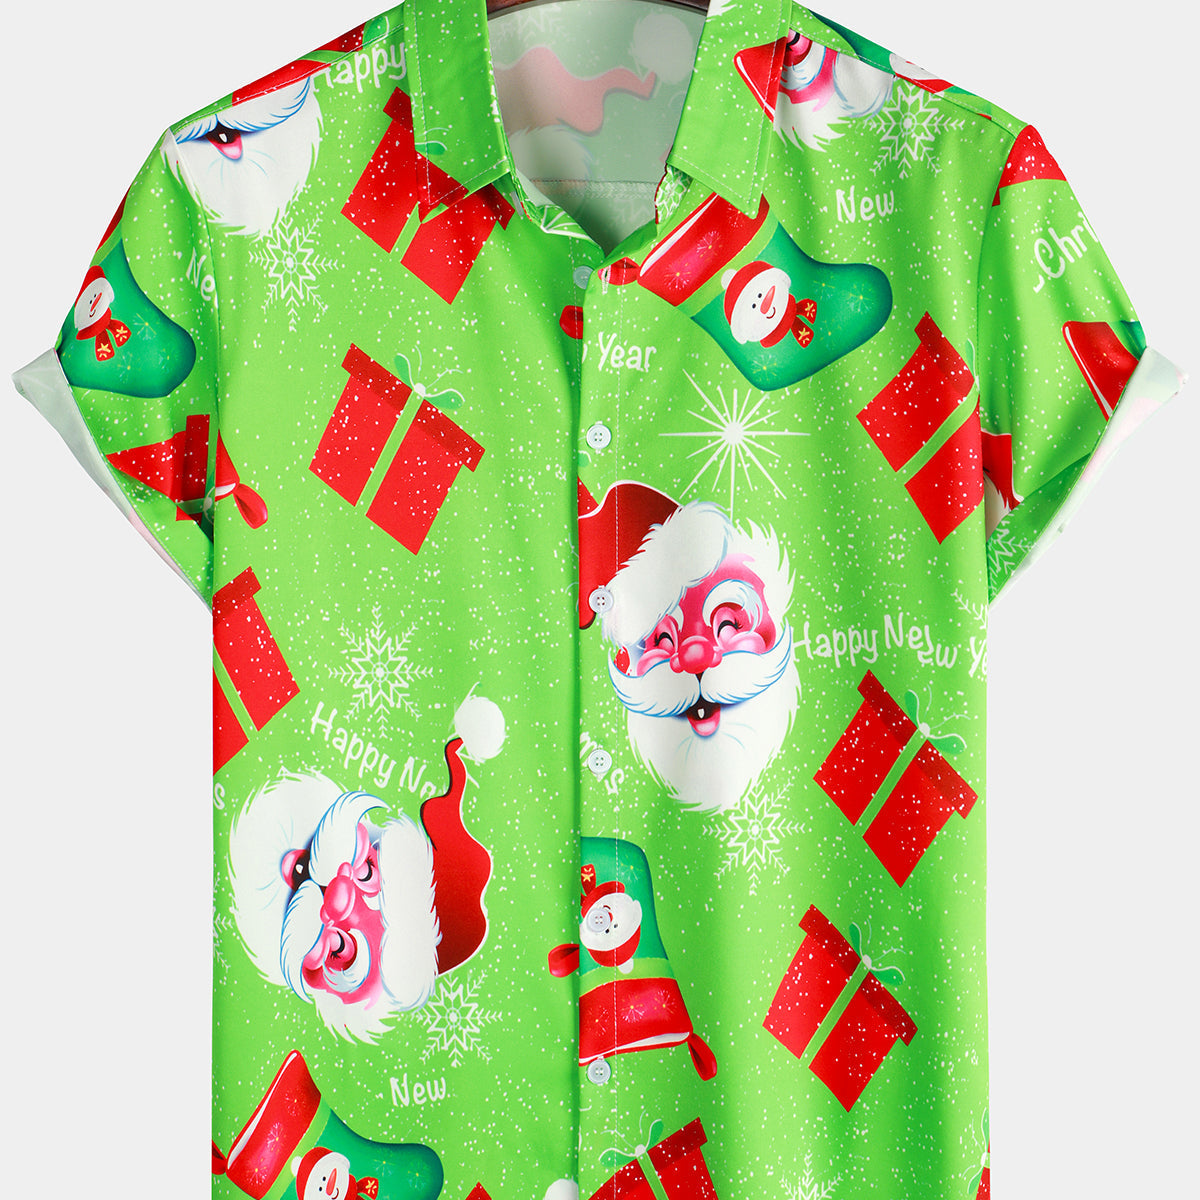 Camisa de manga corta con estampado de regalo y Papá Noel vintage para hombre, color verde, divertida camisa de manga corta con temática navideña